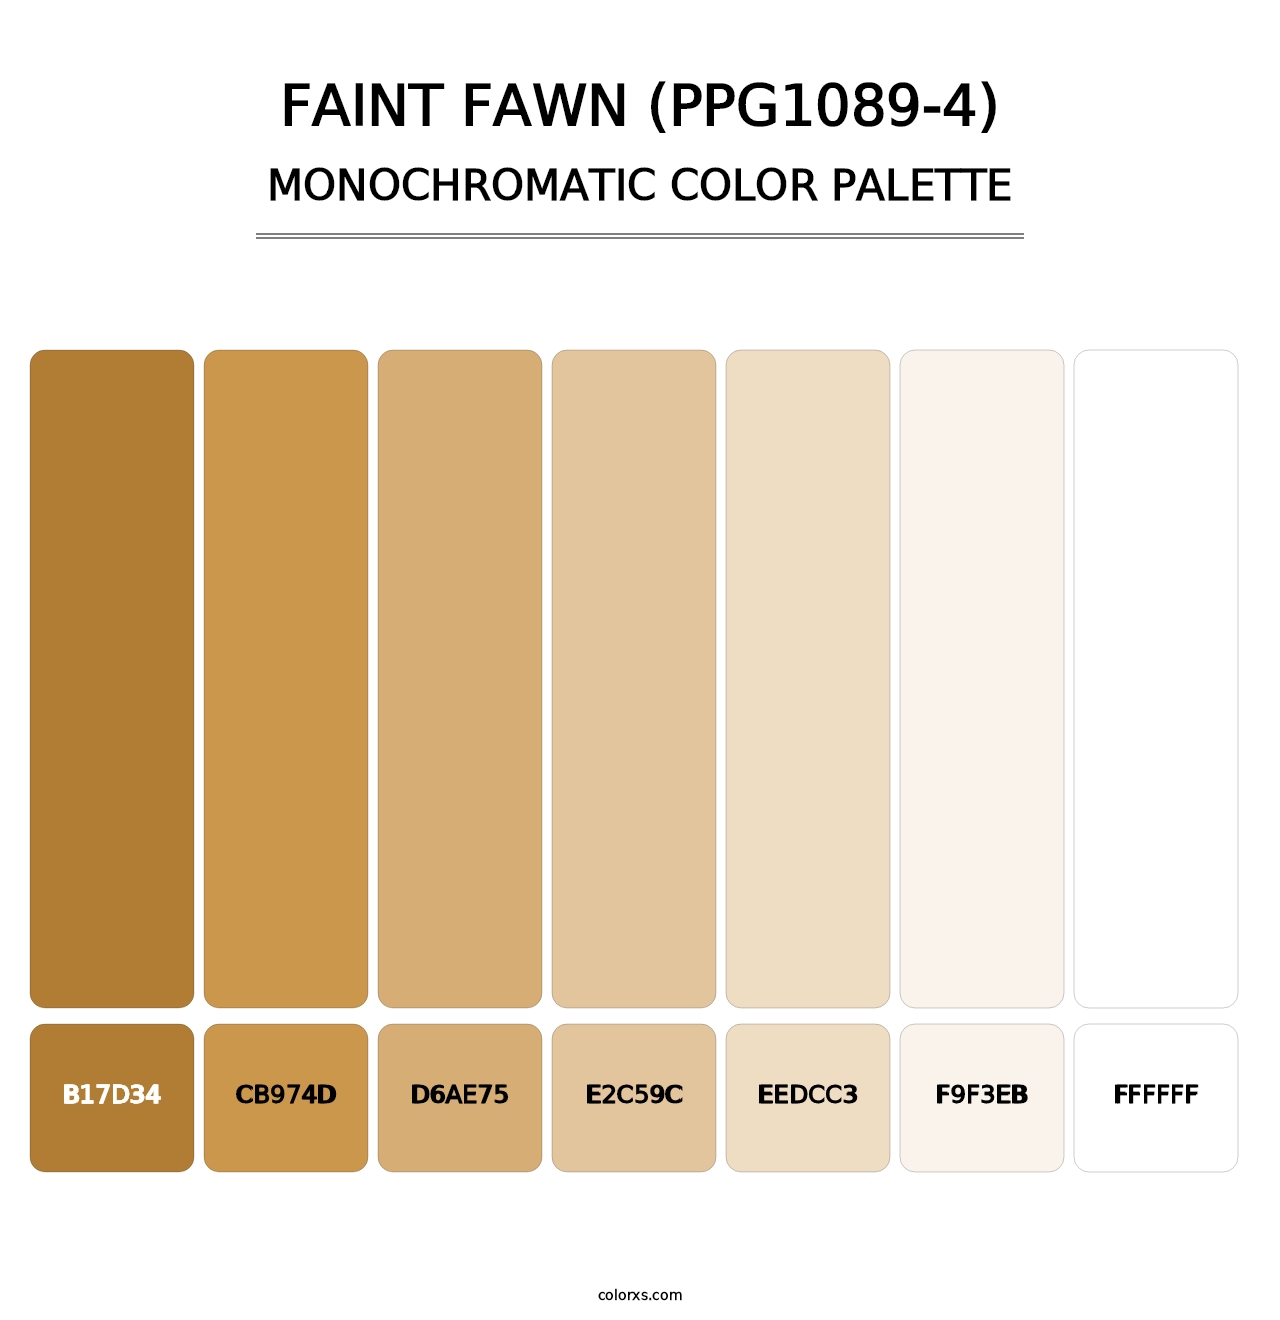 Faint Fawn (PPG1089-4) - Monochromatic Color Palette